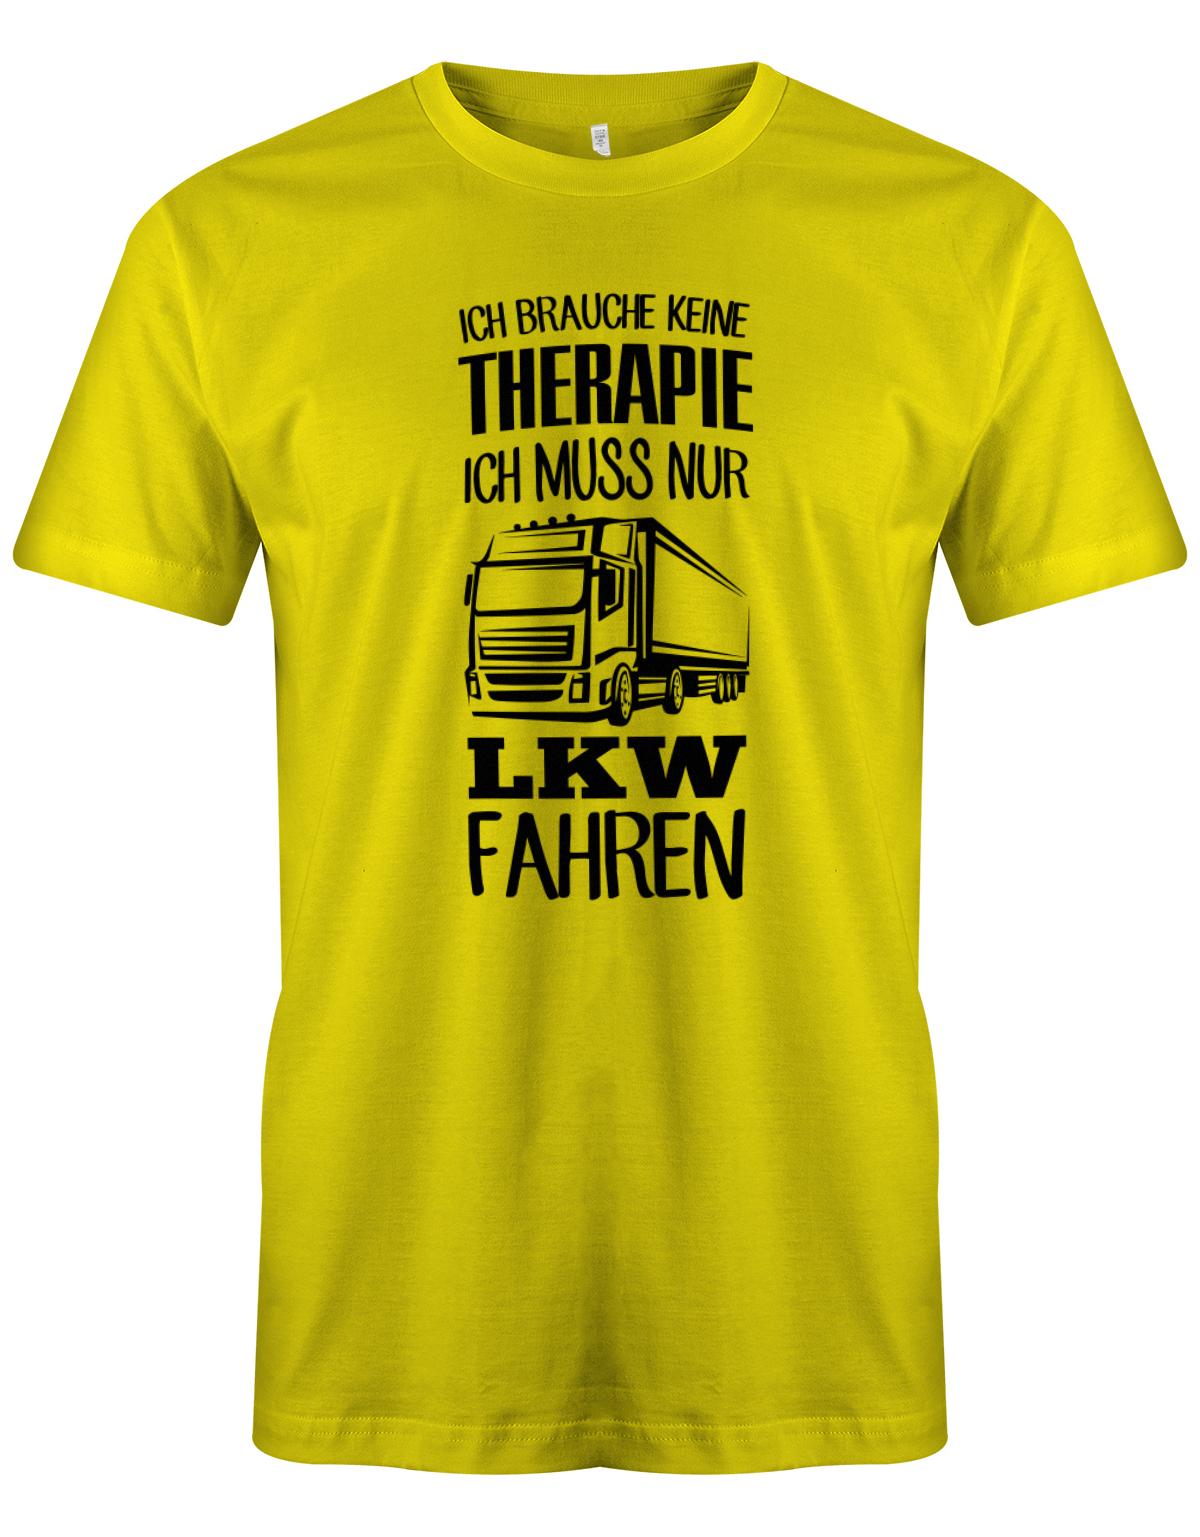 Lkw-Fahrer Shirt - Ich brauche keine Therapie ich muss nur Lkw fahren. gelb